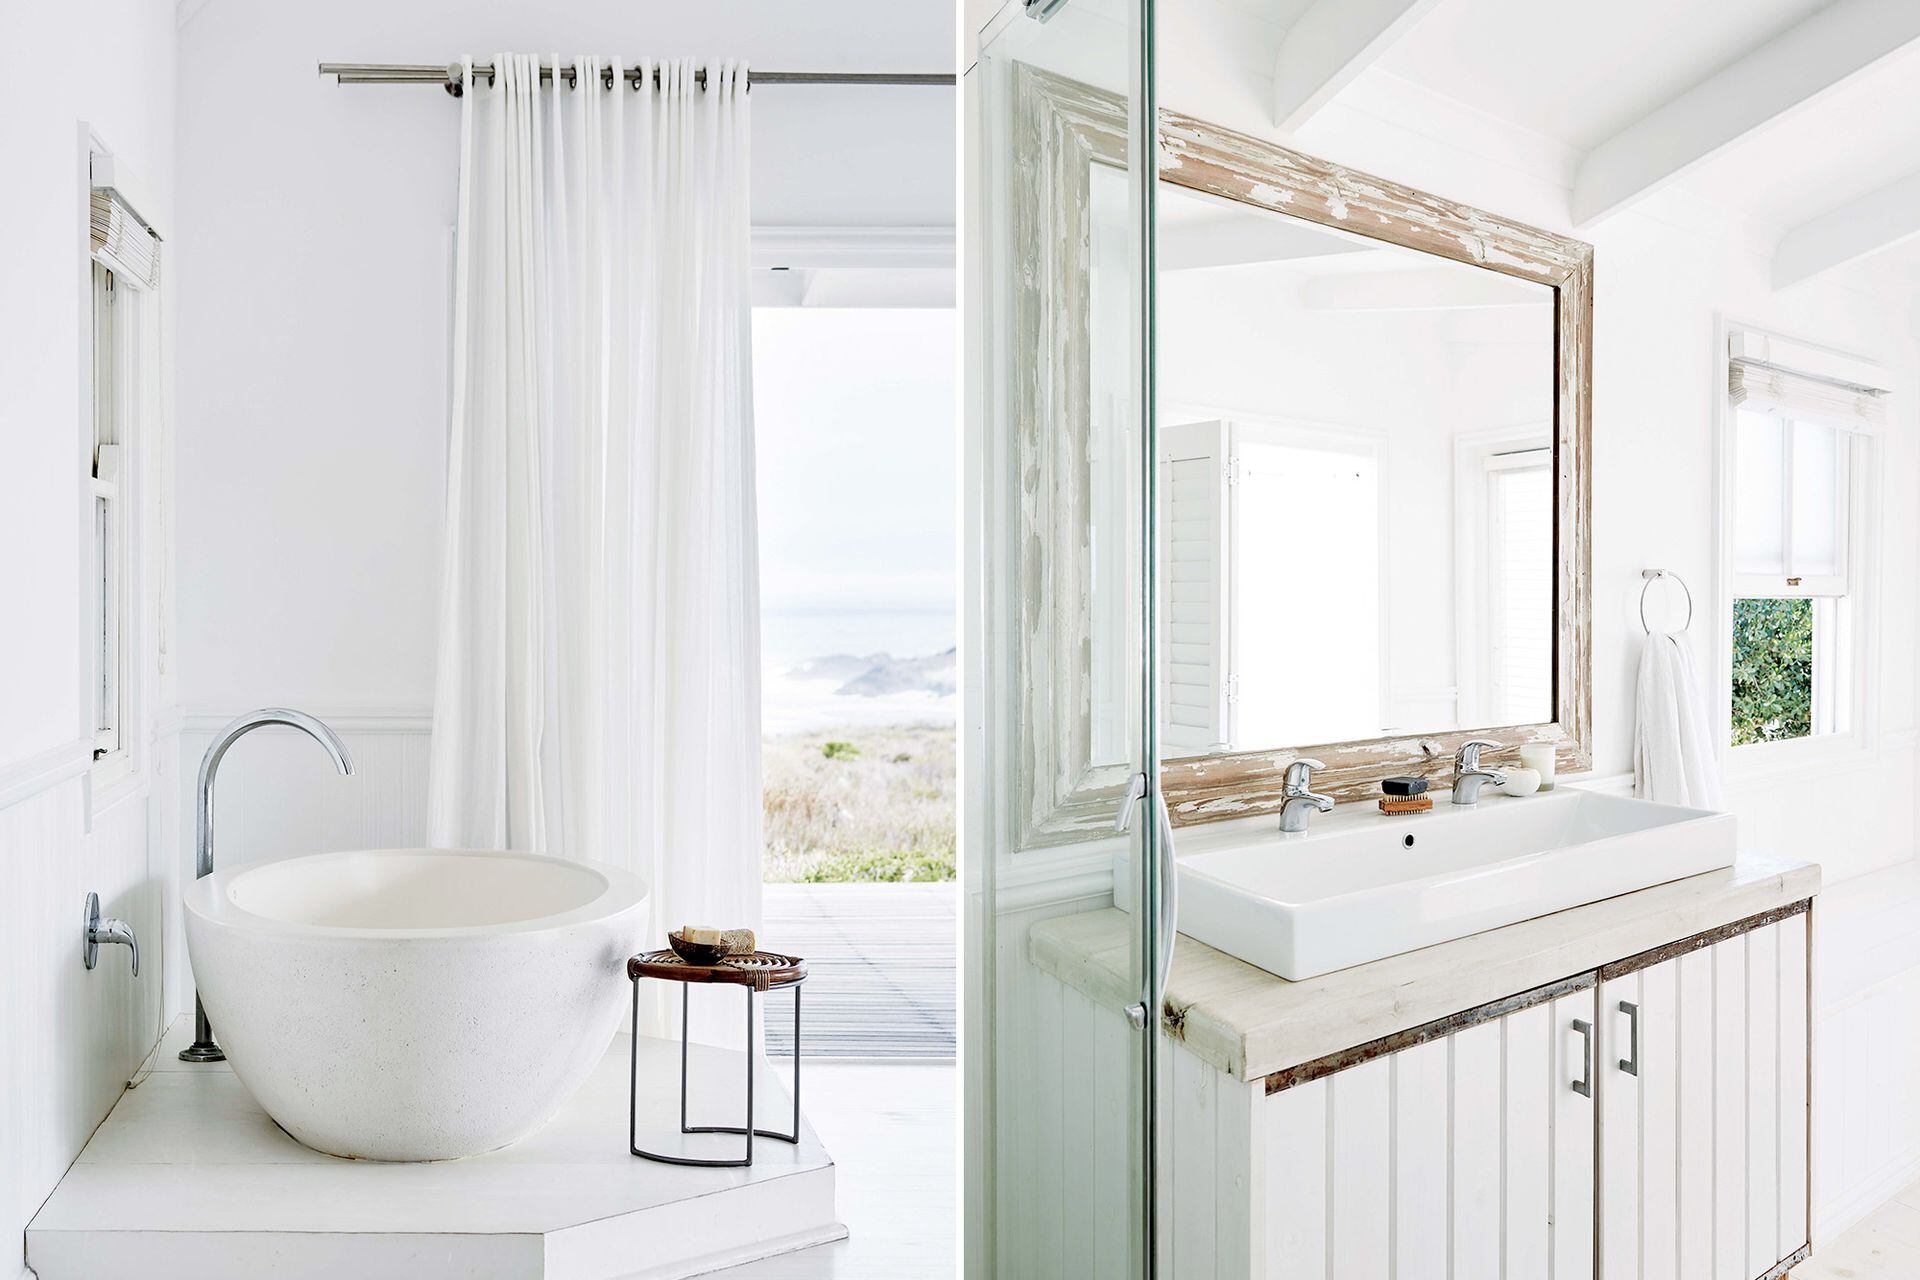 El cuarto de baño tiene una bacha doble de apoyo y un espejo con marco decapado, que se asocia con el estilo de la cama.